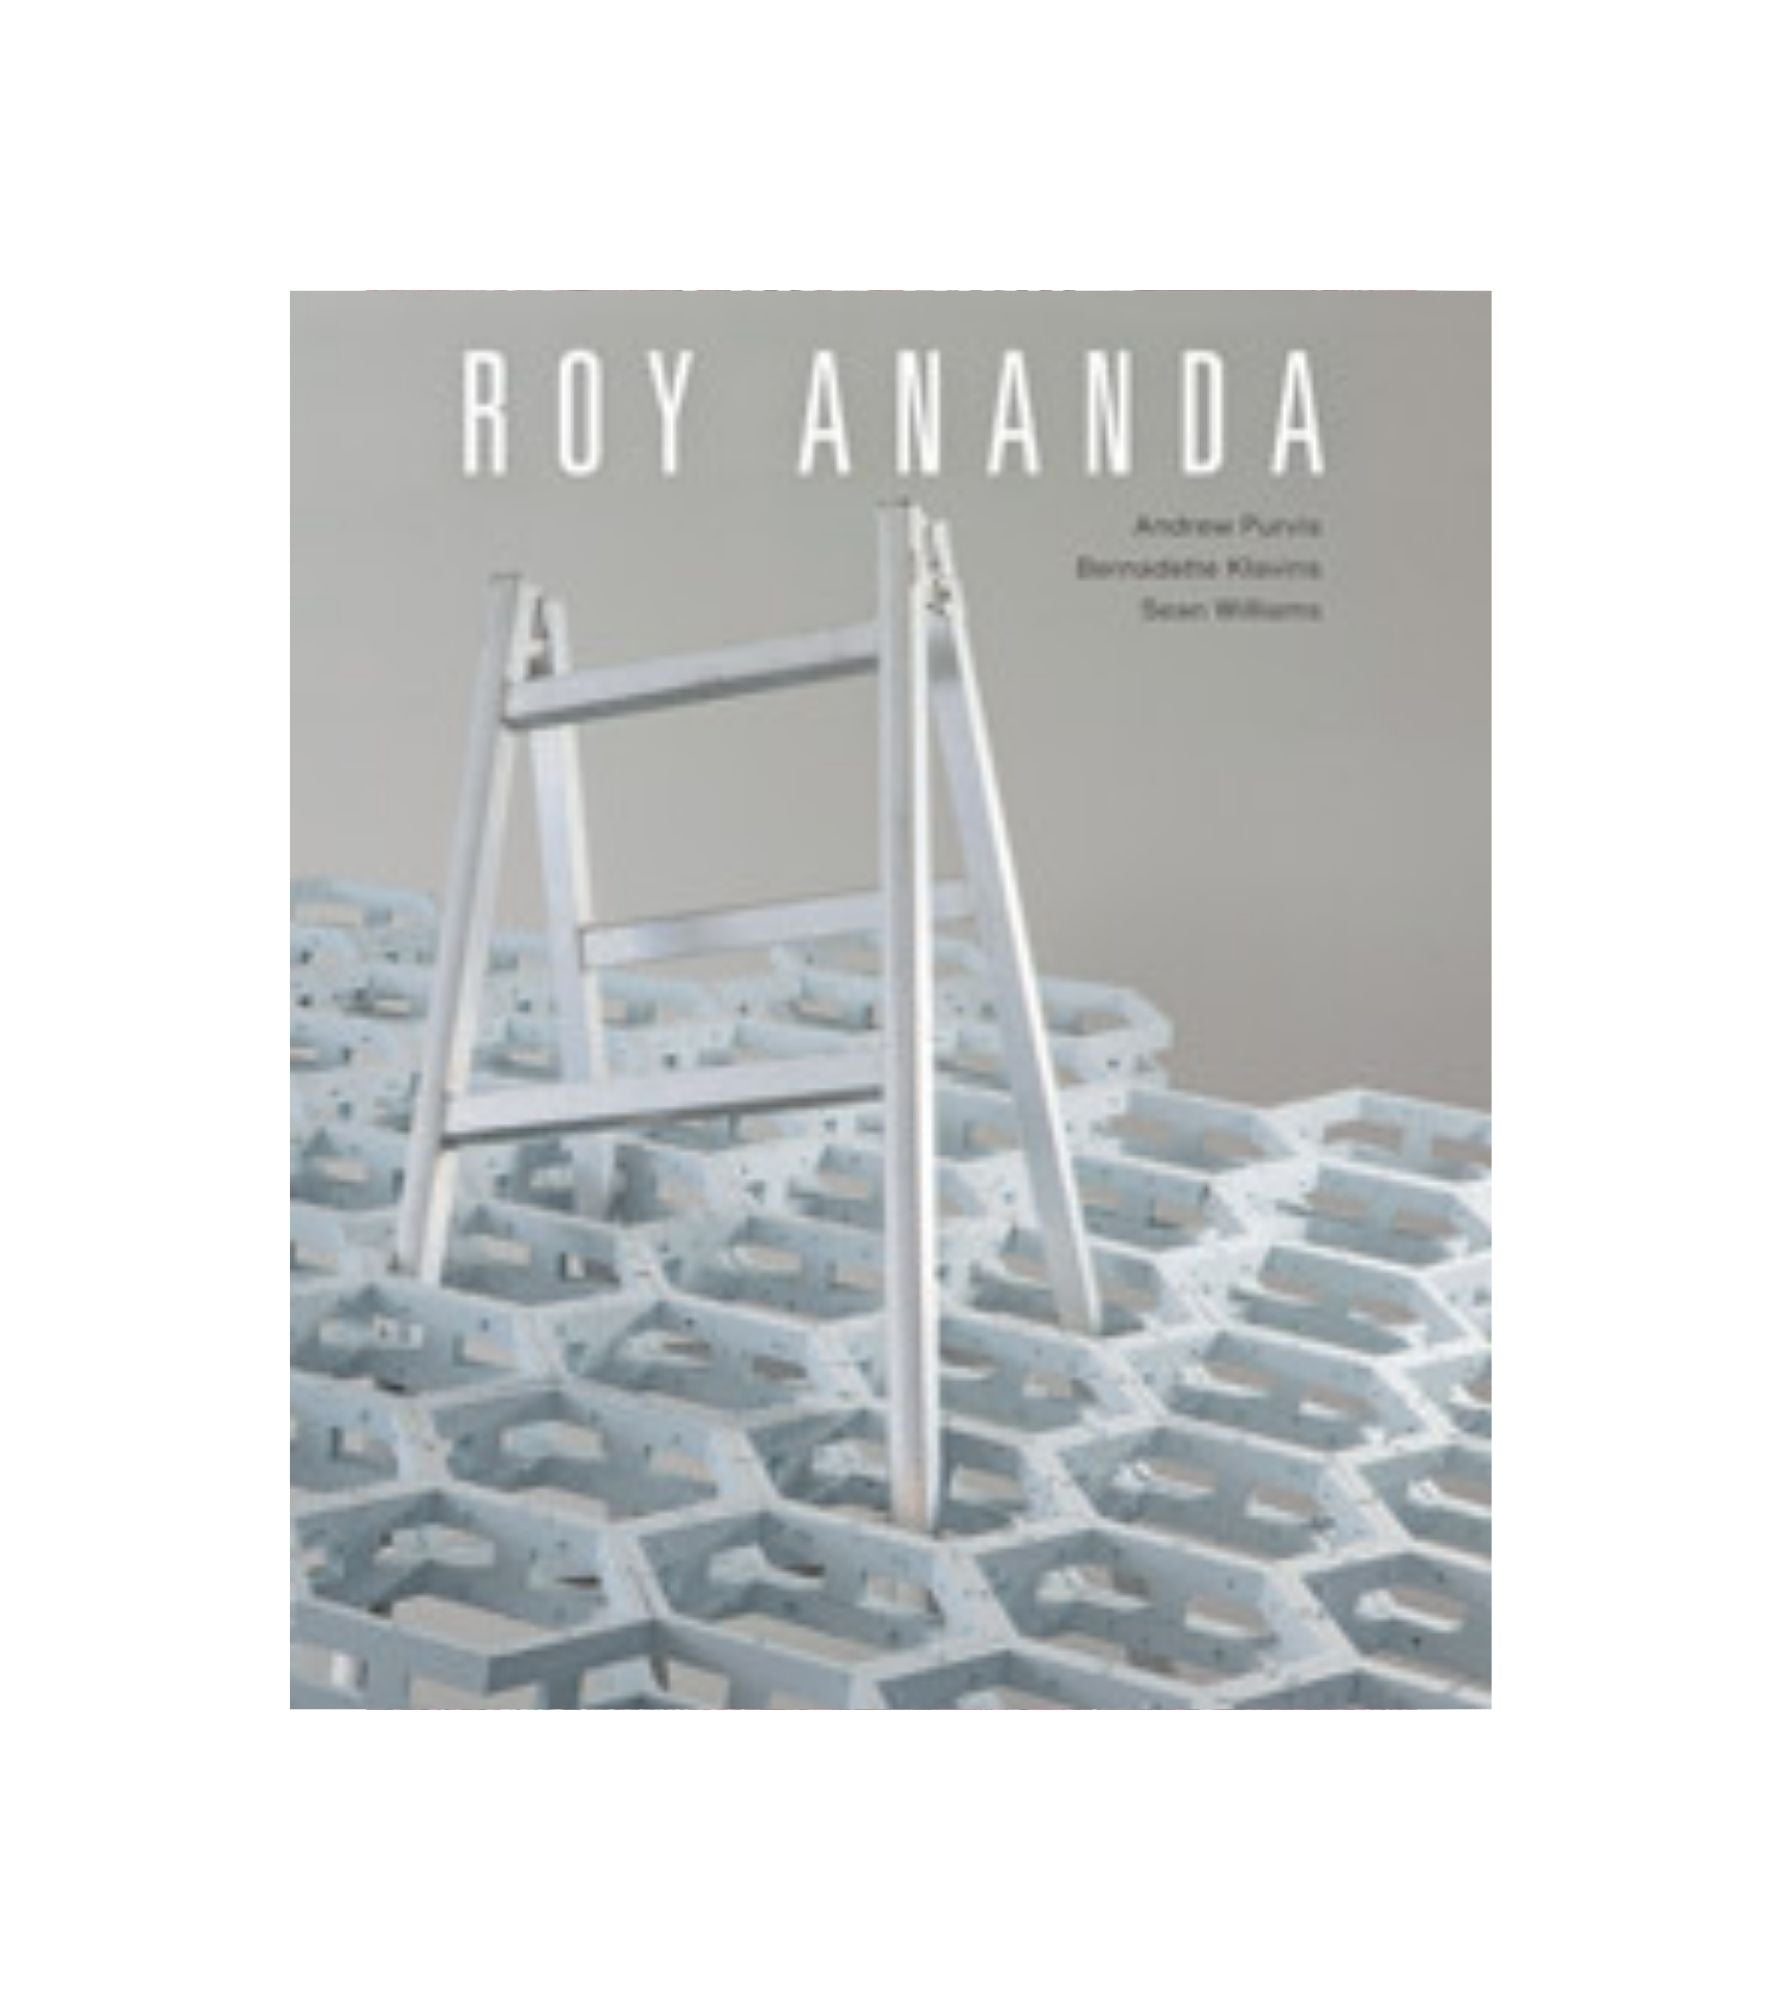 Roy Ananda